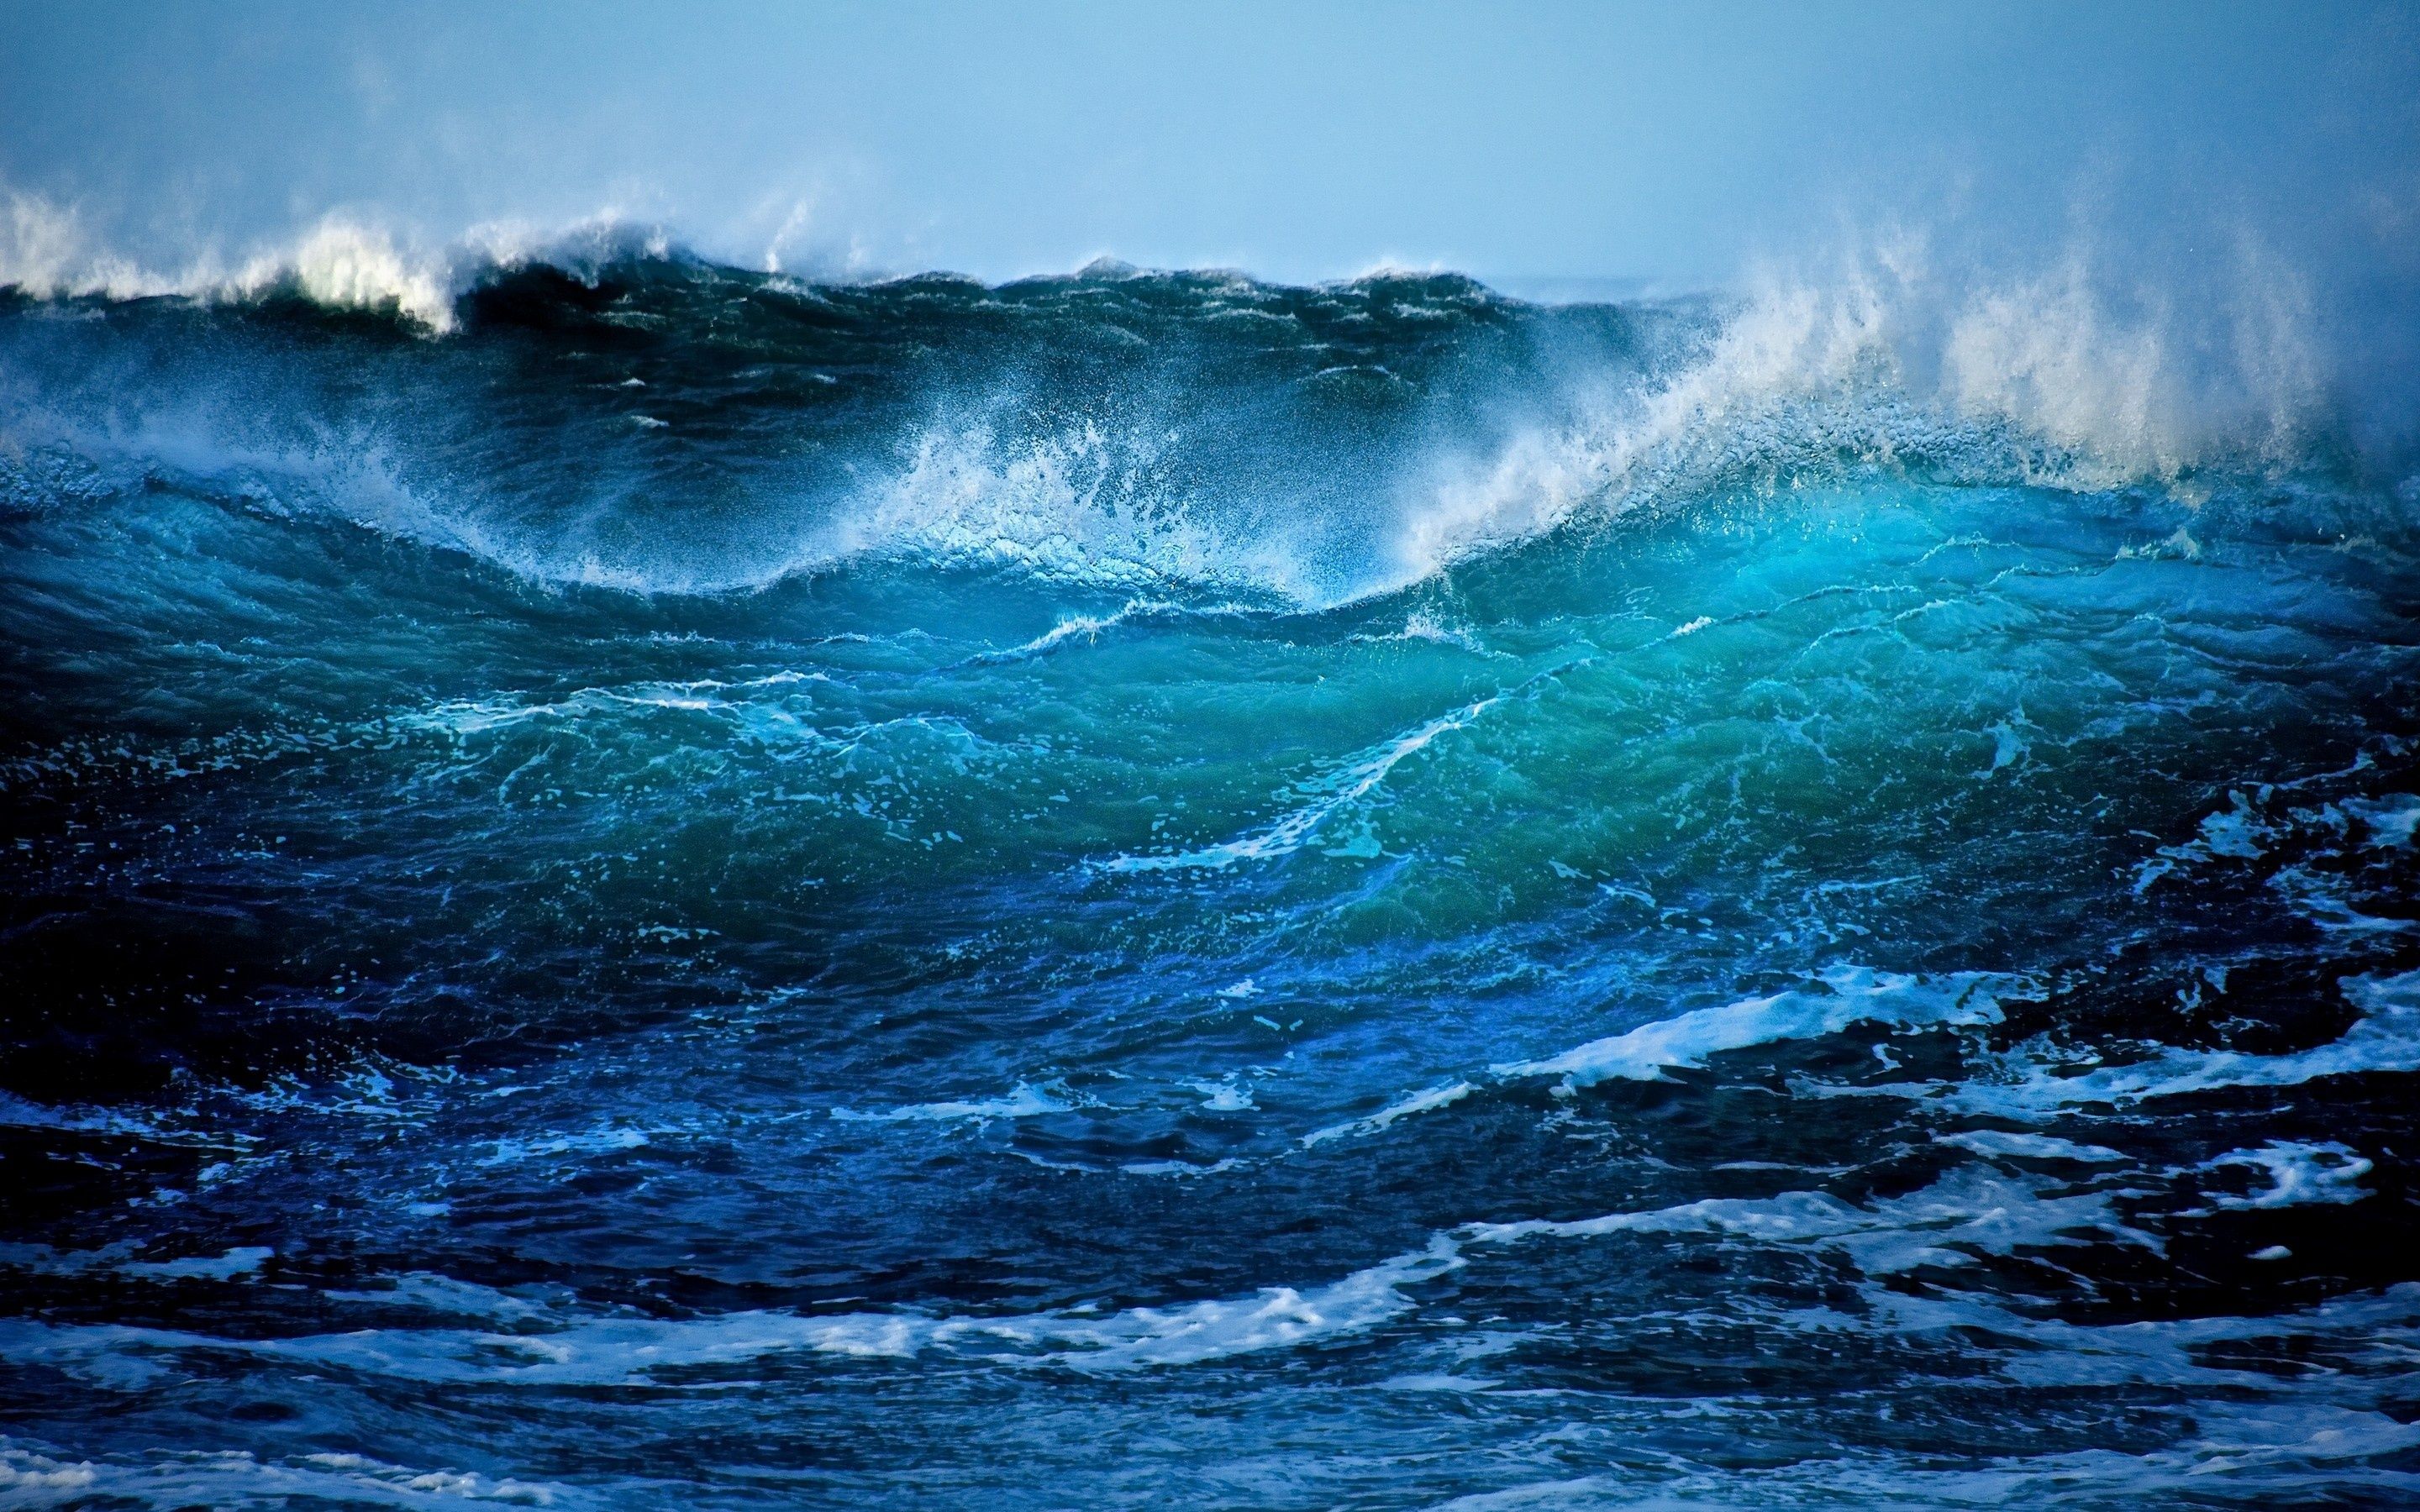 Ocean Storm Waves Wallpapers, Waves Wallpapers.